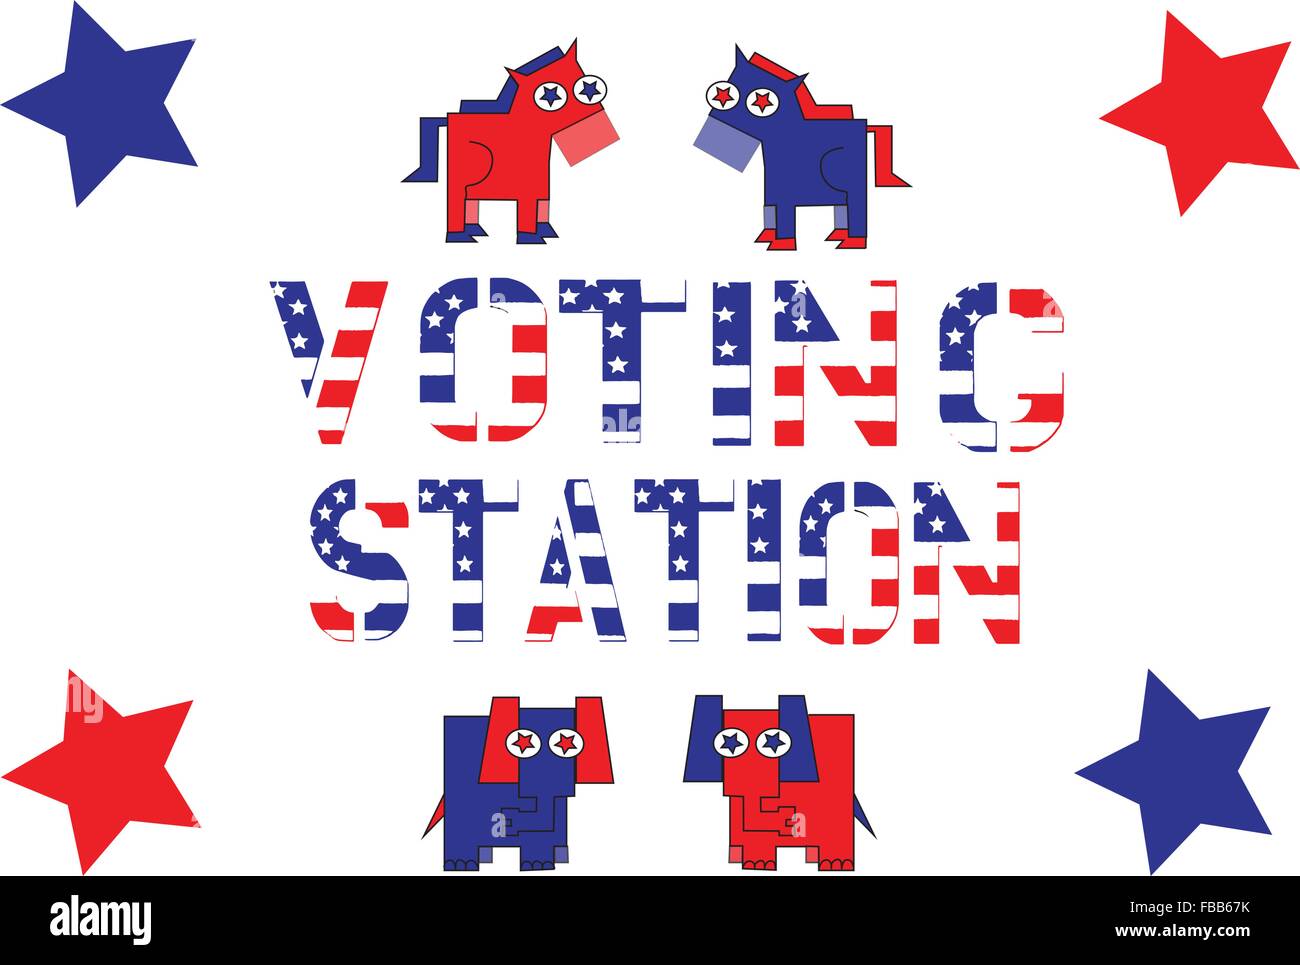 Rot, weiß und blau Rechtschreibung Abstimmung republikanische Partei Maskottchen mit Sternen auf weißem Schriftzug. Stock Vektor